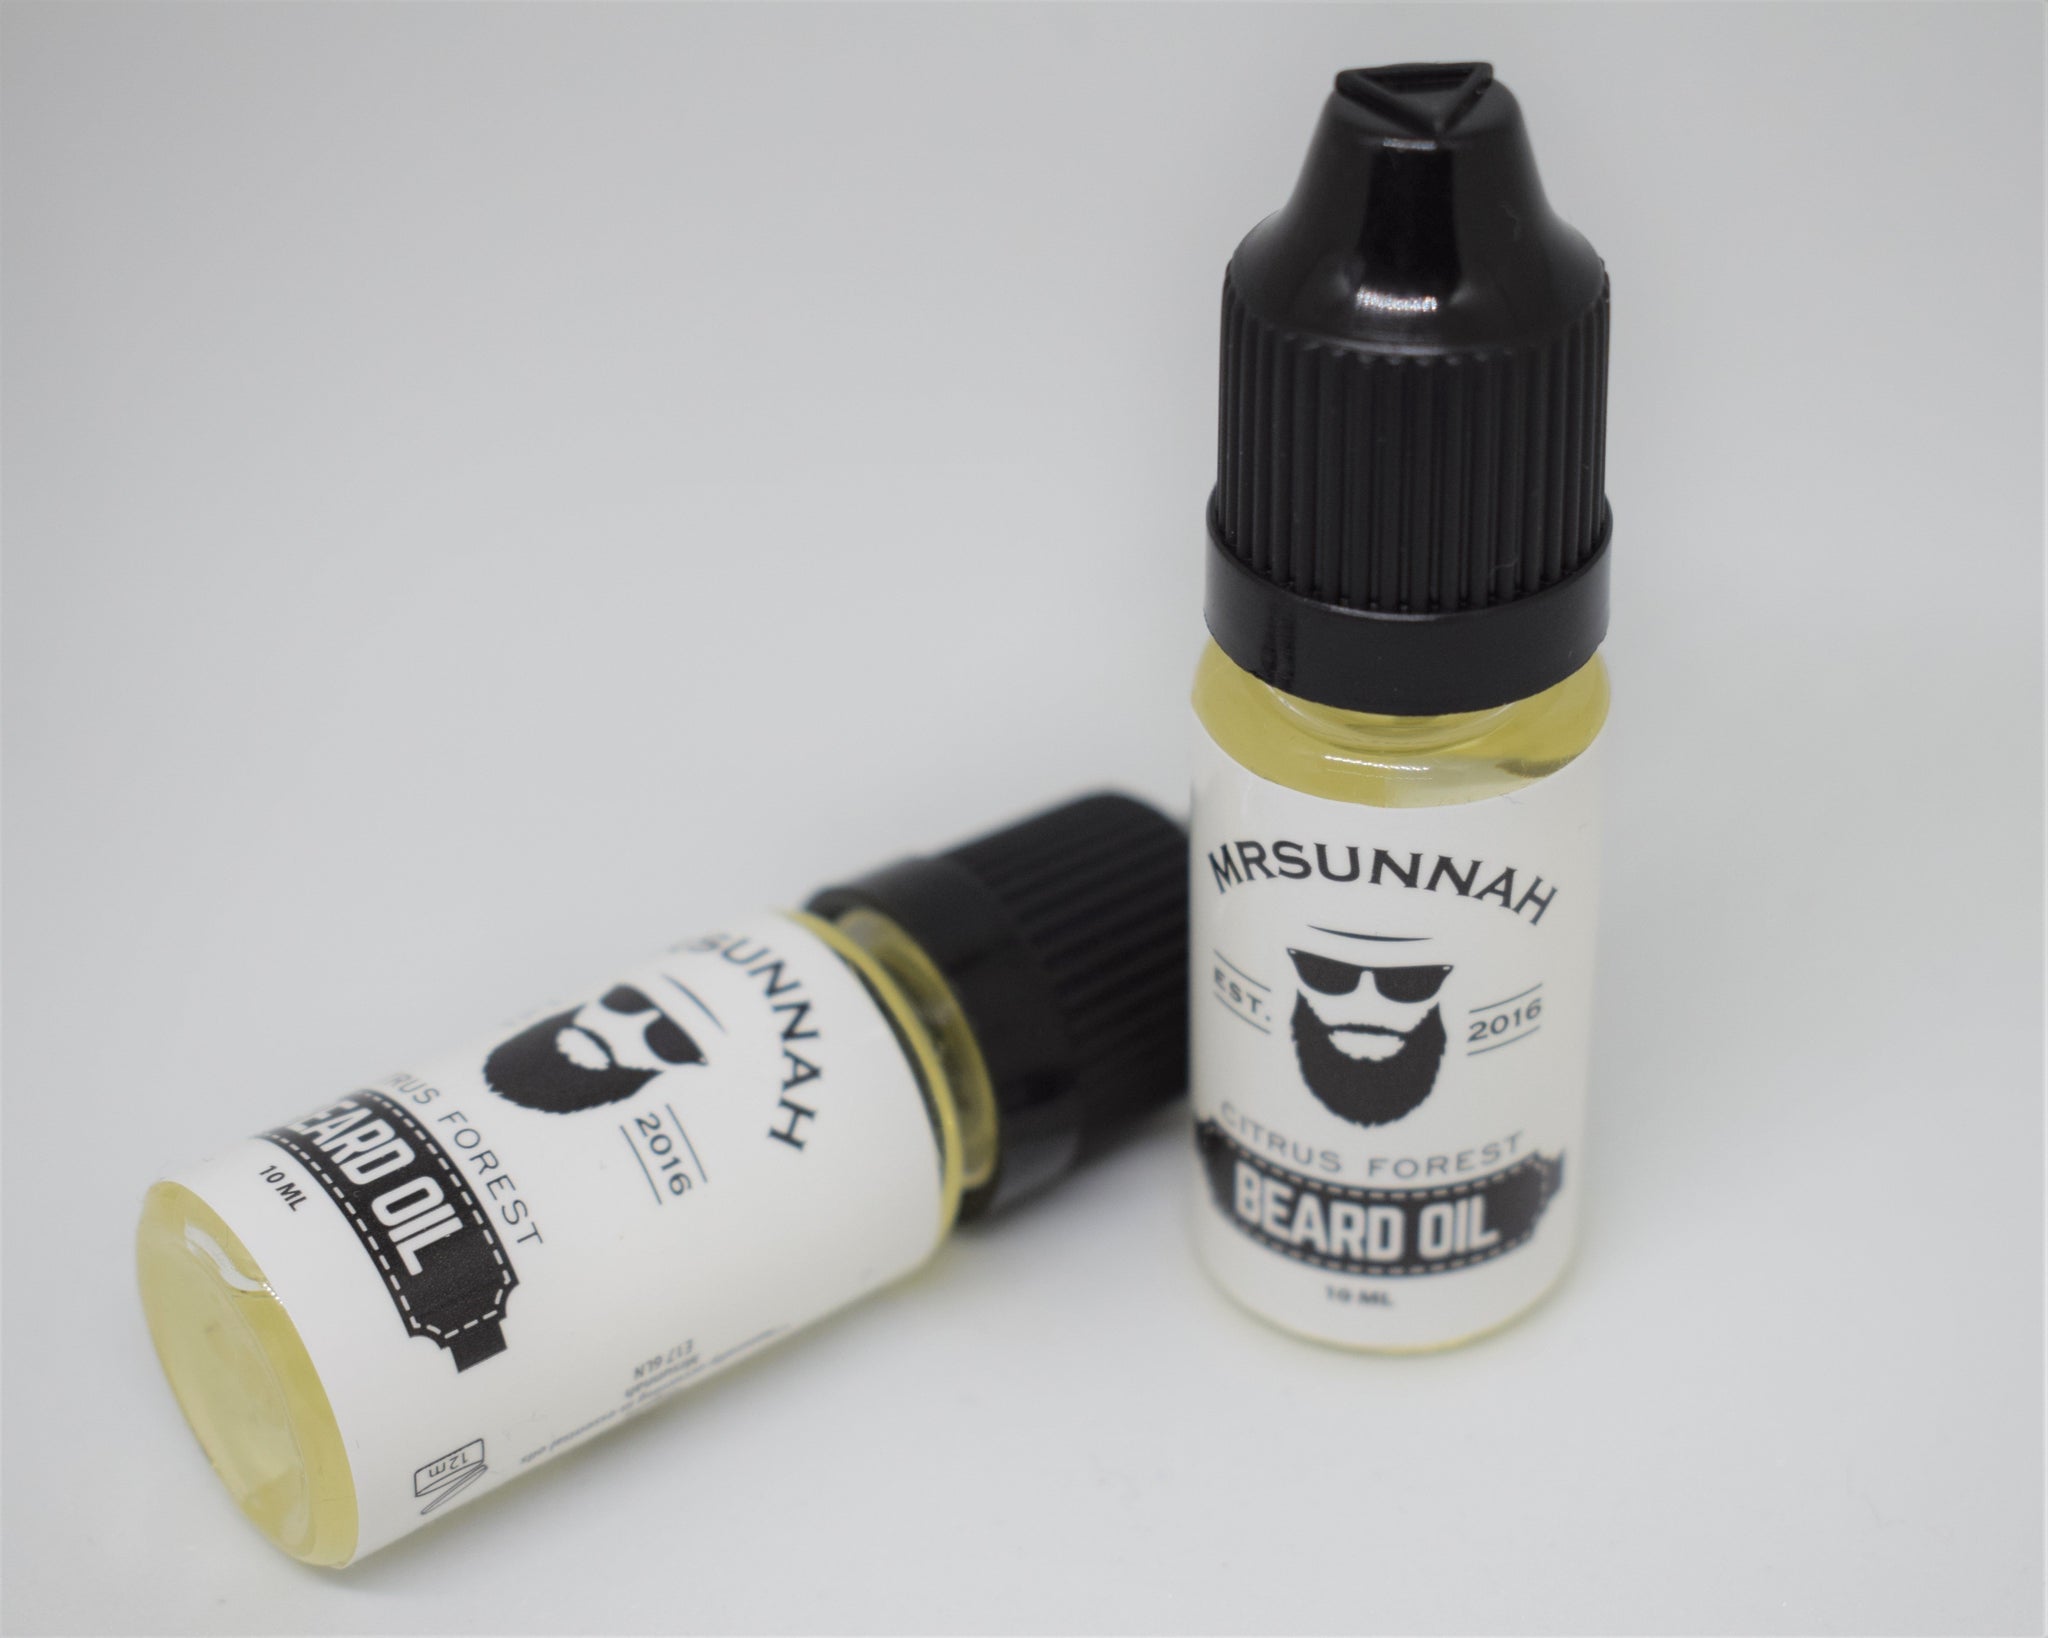 Citrus Forest Beard Oil (10ml) - Mrsunnah Grooming Co 